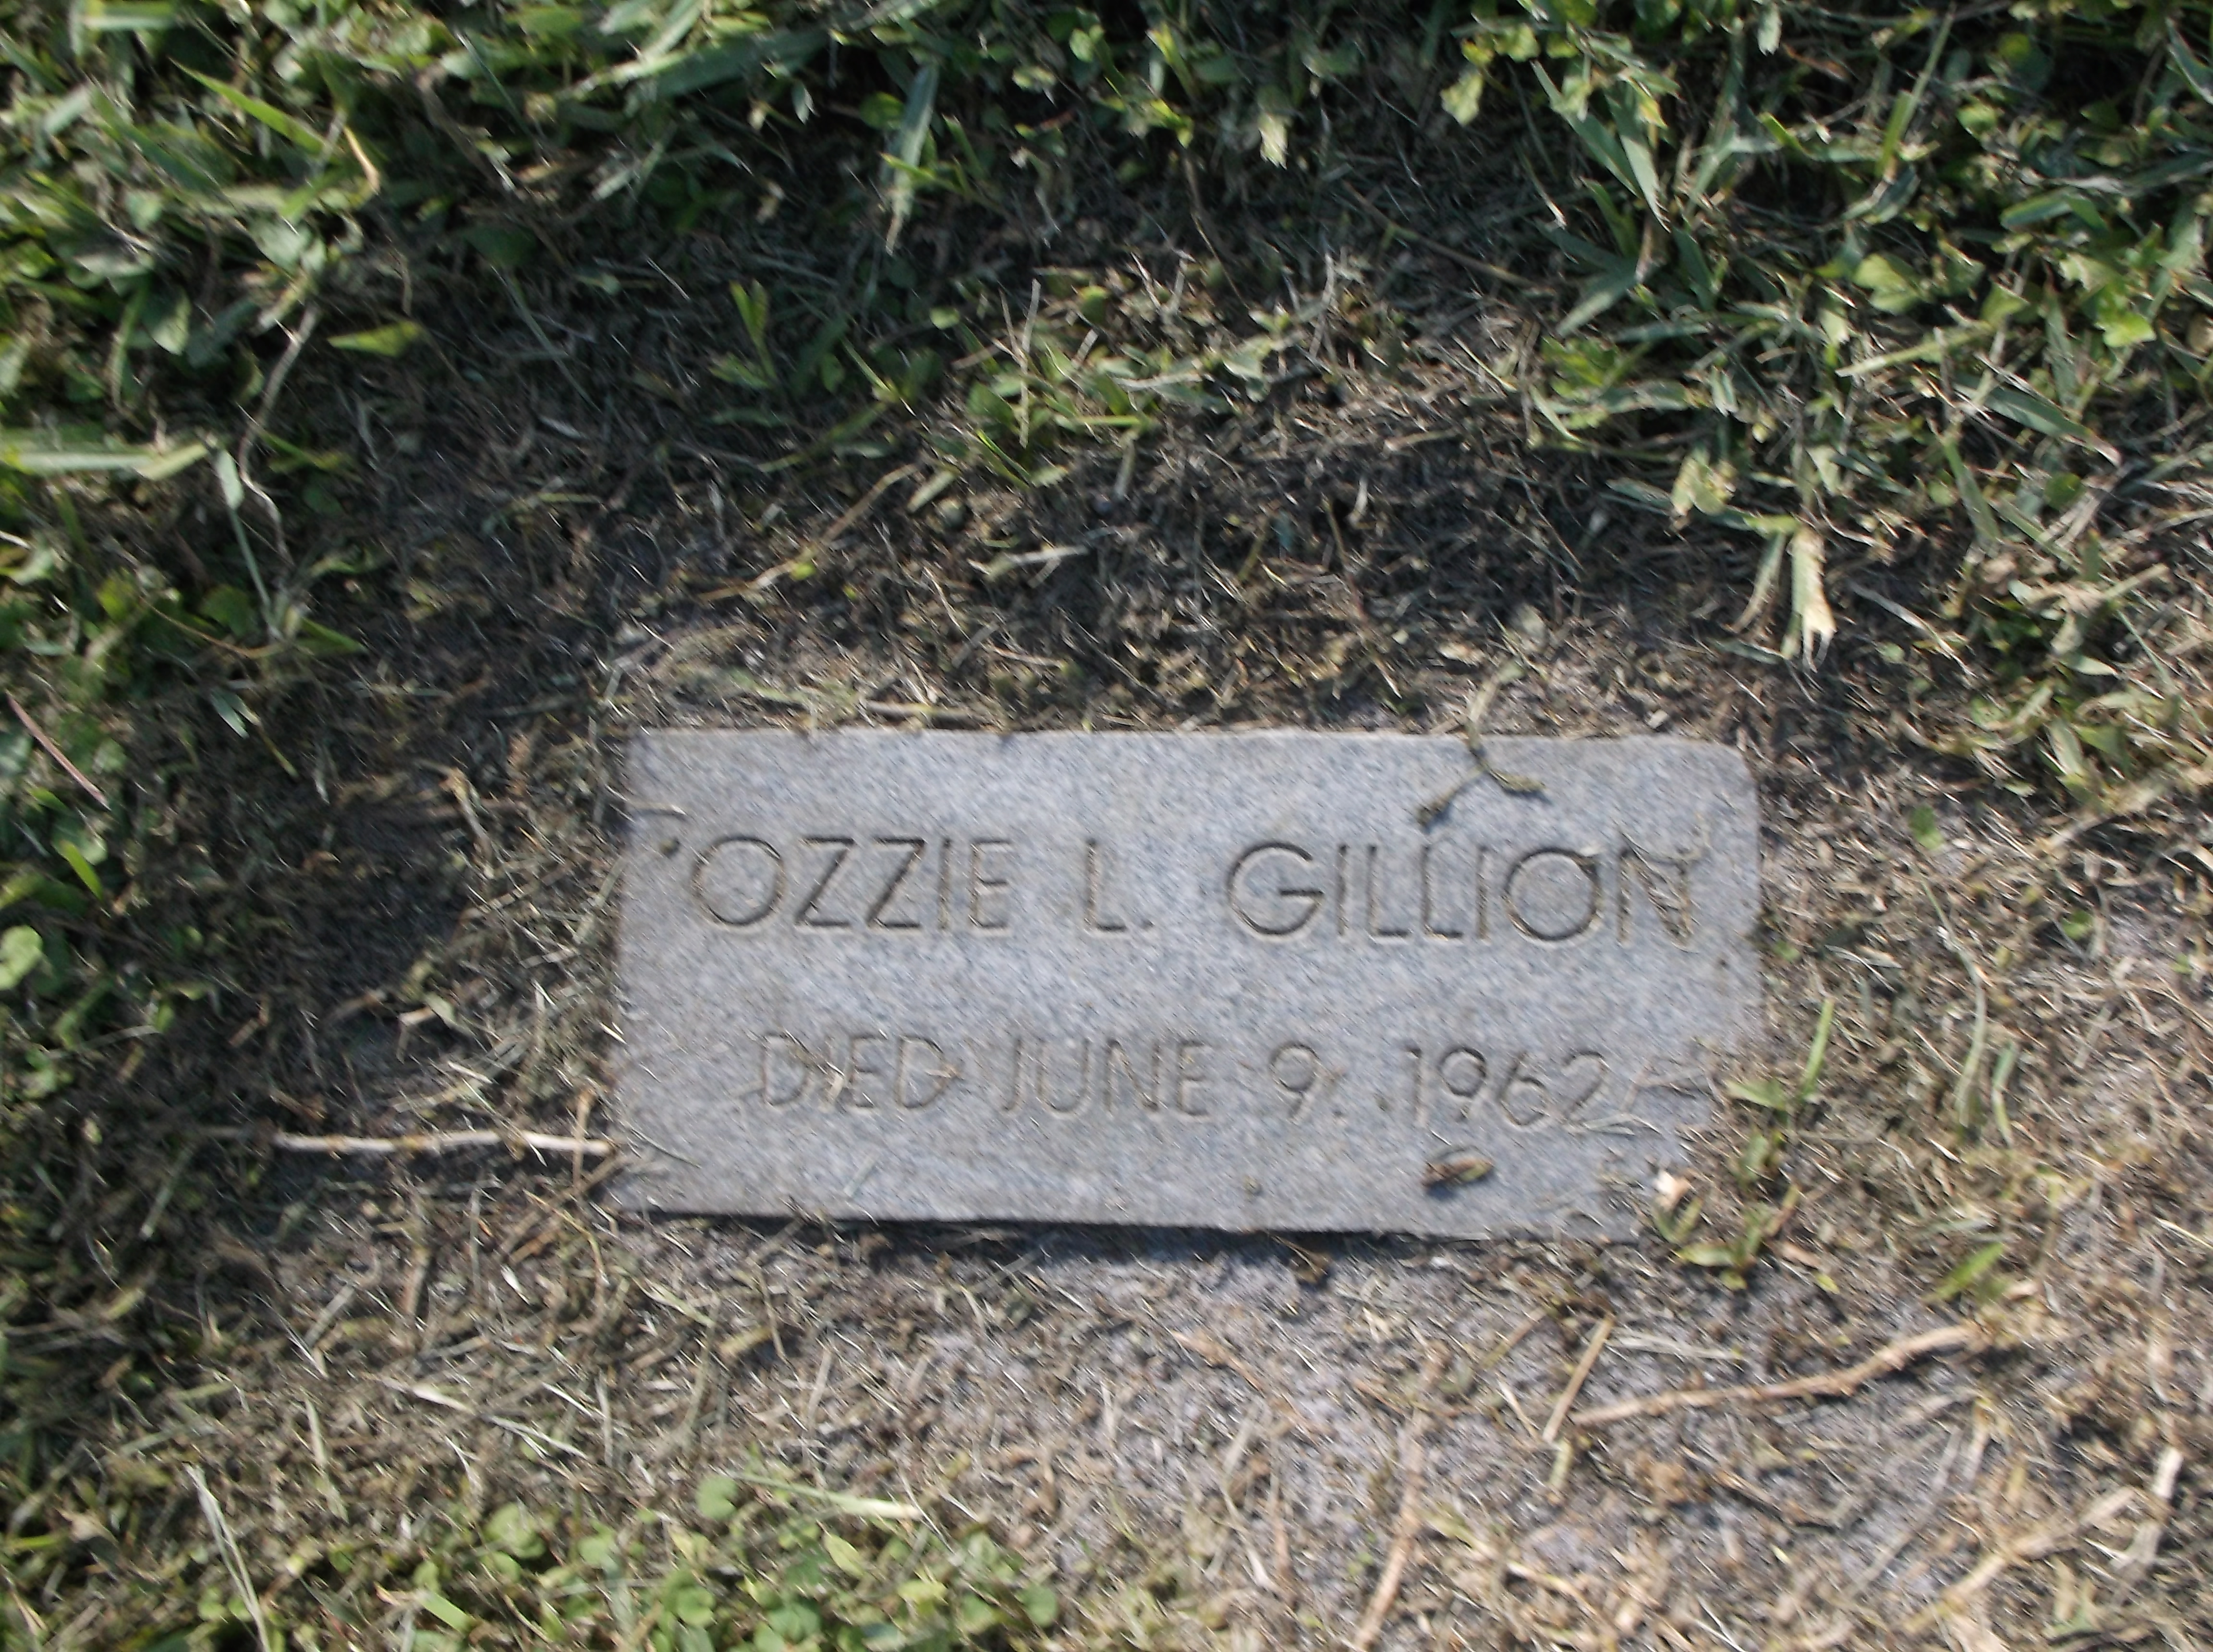 Ozzie L Gillion